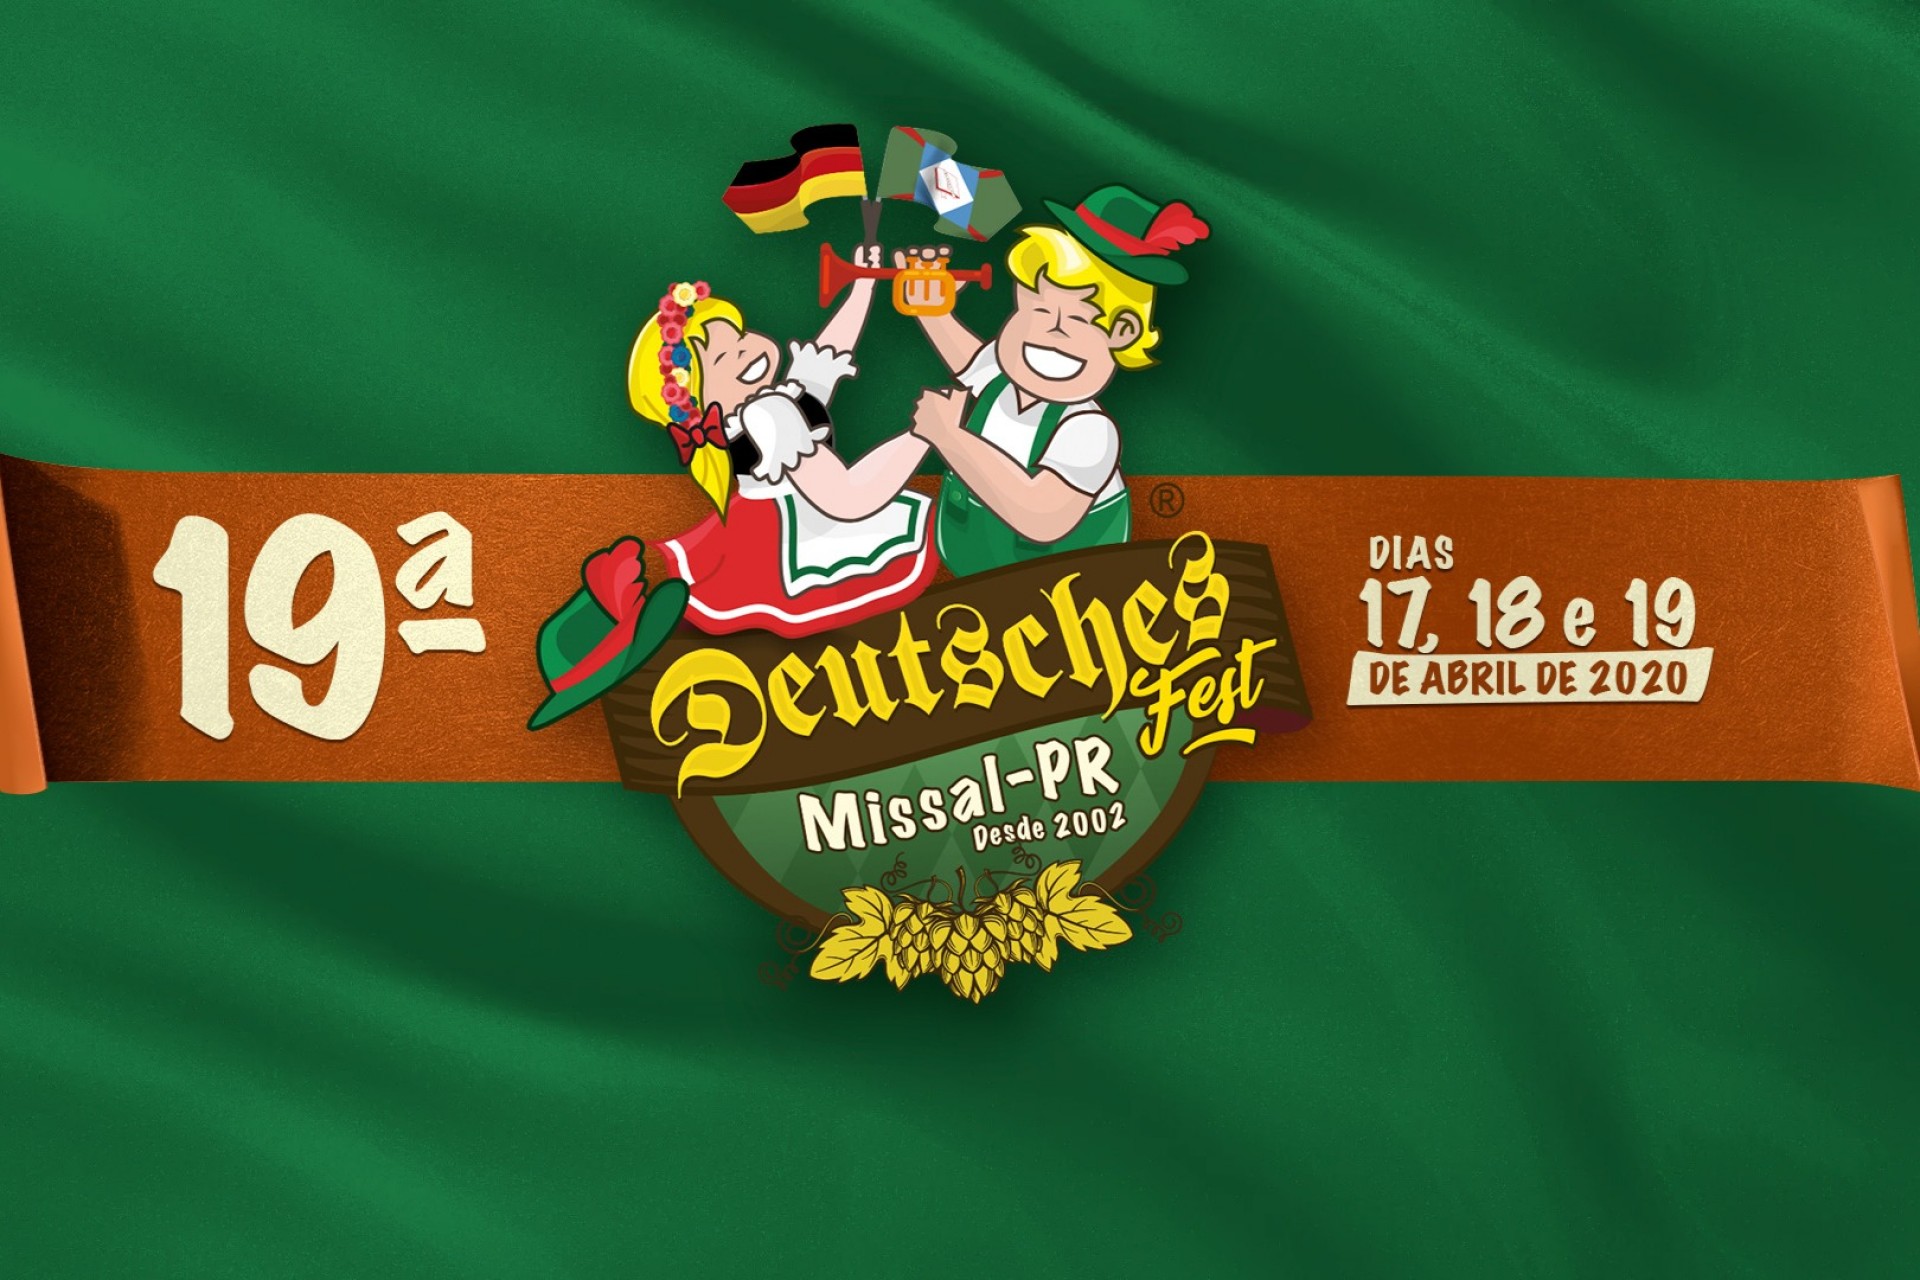 Associação Cultural Deutsches Fest informa que o evento está mantido até segunda ordem